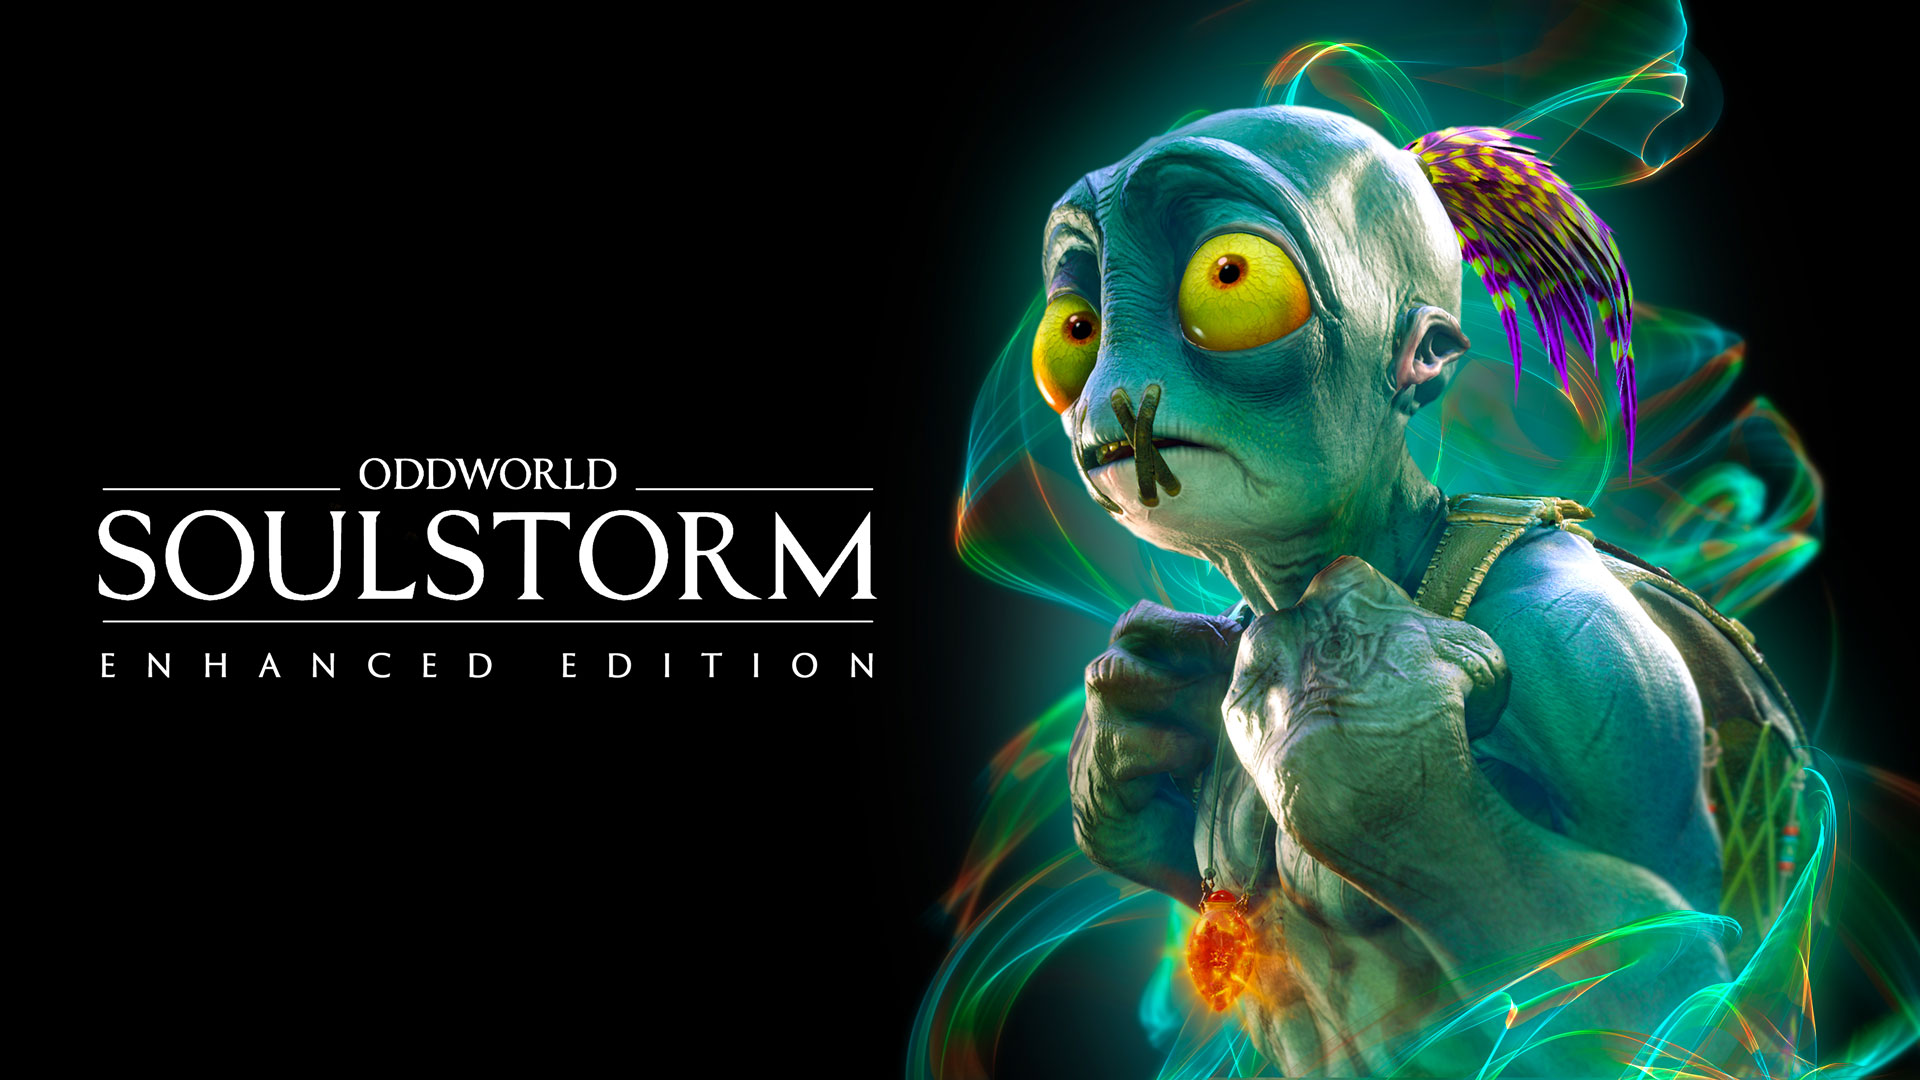 Une nouvelle date de sortie pour Oddworld : Soulstorm a été révélée